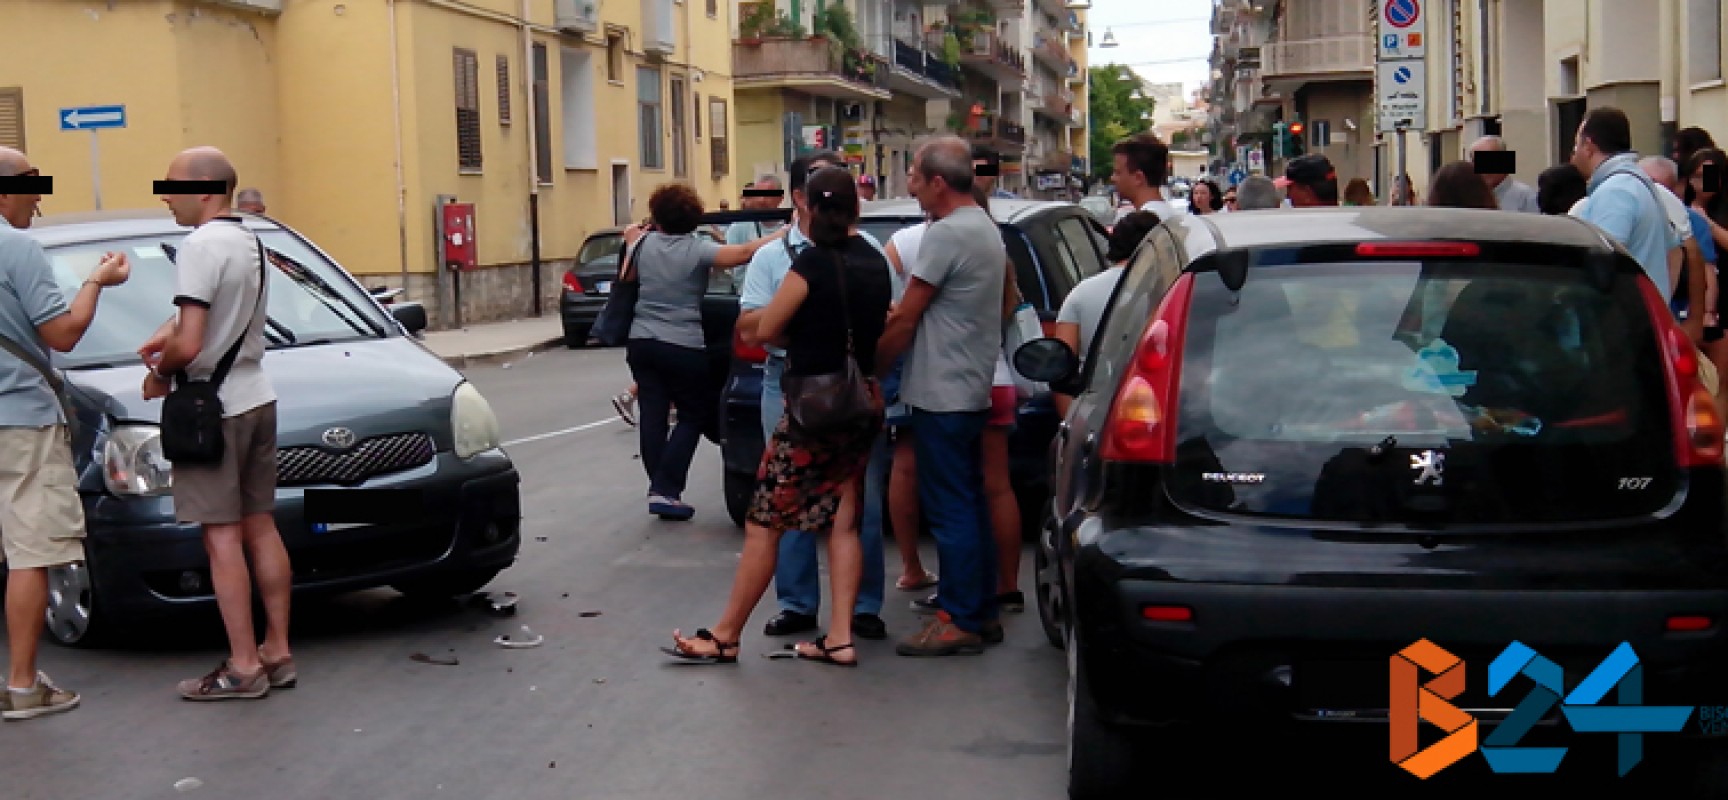 Rocambolesco incidente su Corso Umberto per colpa di una portiera aperta distrattamente / FOTO